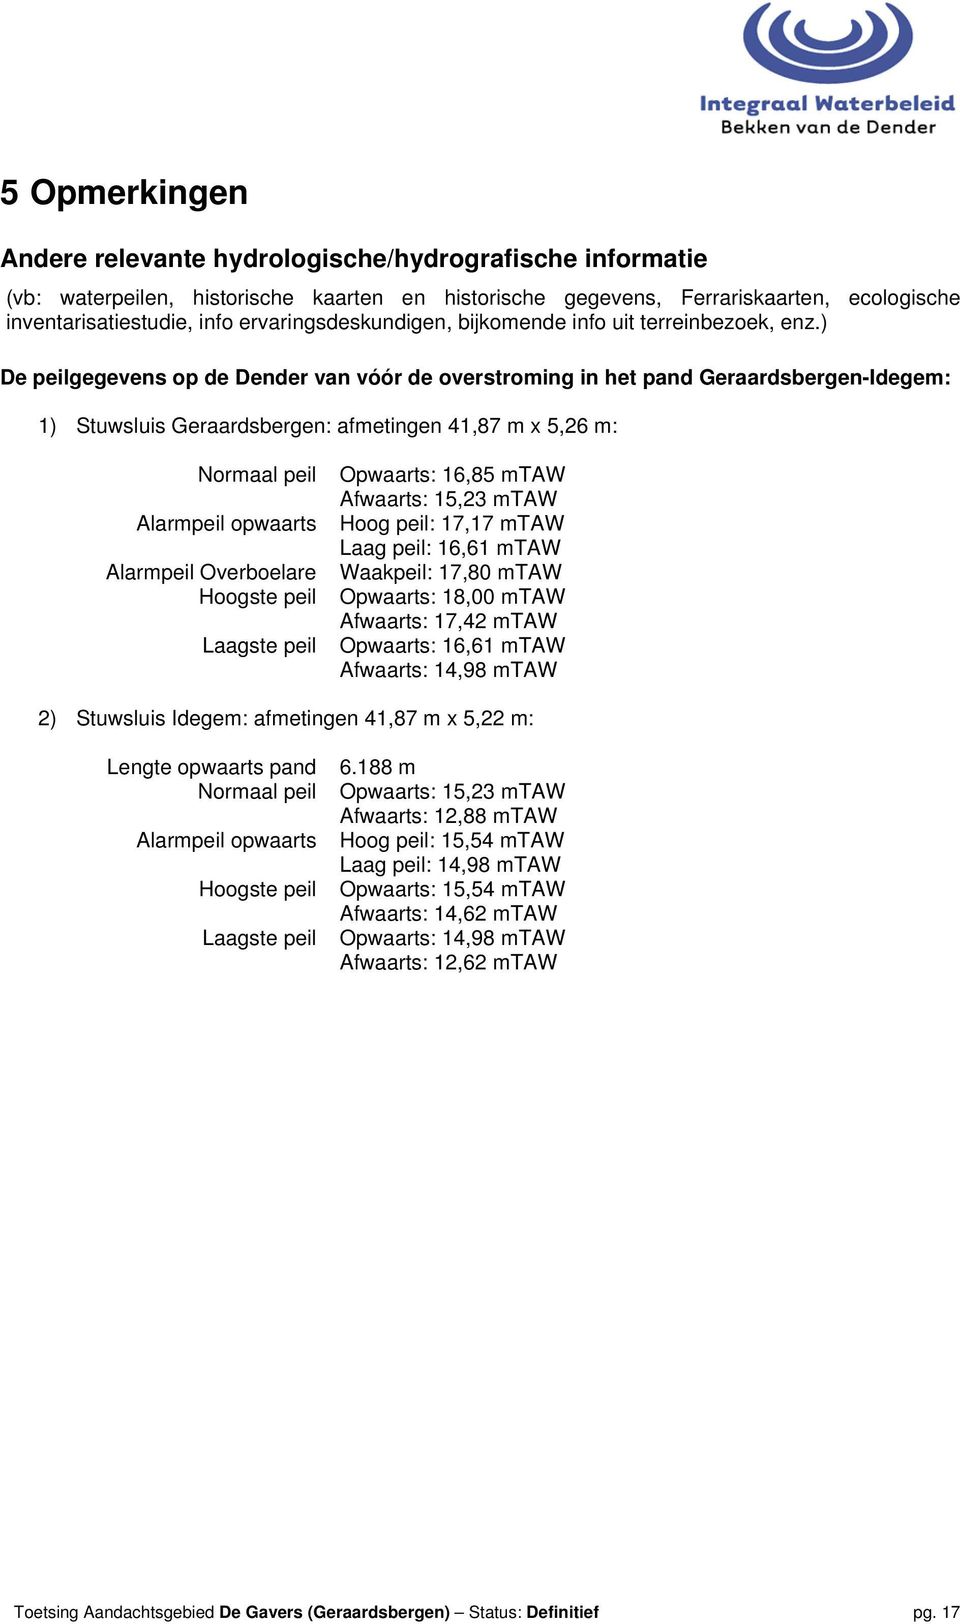 ) De peilgegevens op de Dender van vóór de overstroming in het pand Geraardsbergen-Idegem: 1) Stuwsluis Geraardsbergen: afmetingen 41,87 m x 5,26 m: Normaal peil Alarmpeil opwaarts Alarmpeil